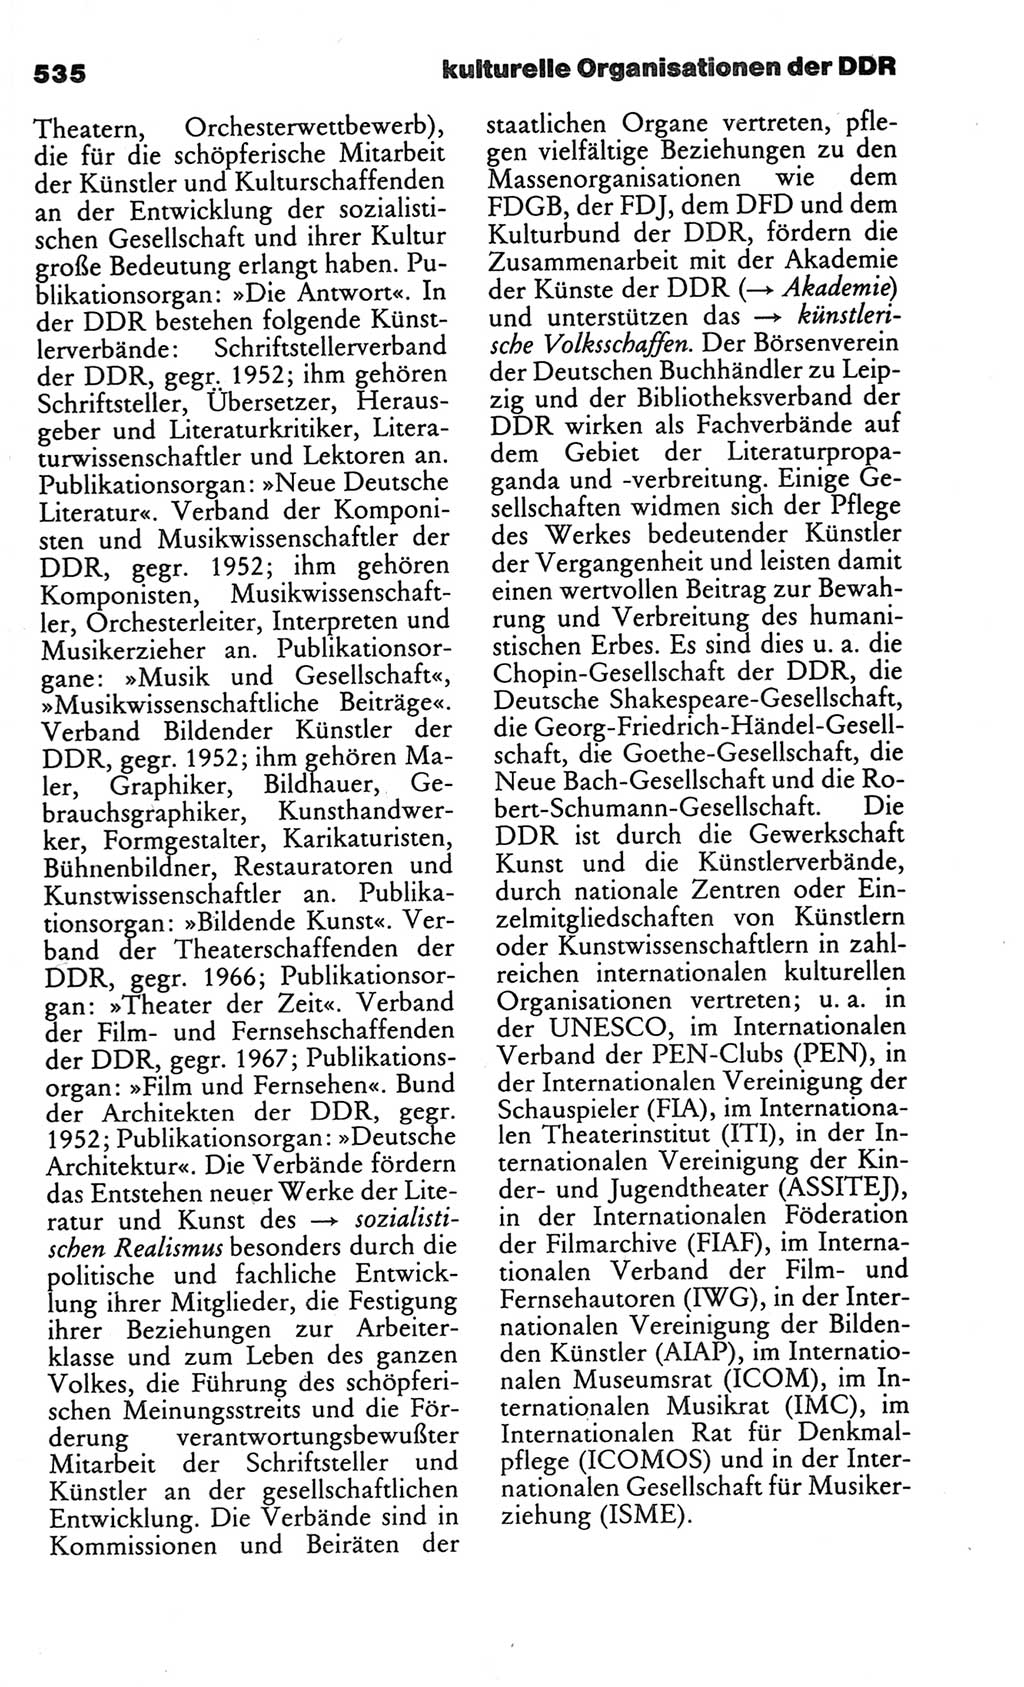 Kleines politisches Wörterbuch [Deutsche Demokratische Republik (DDR)] 1986, Seite 535 (Kl. pol. Wb. DDR 1986, S. 535)